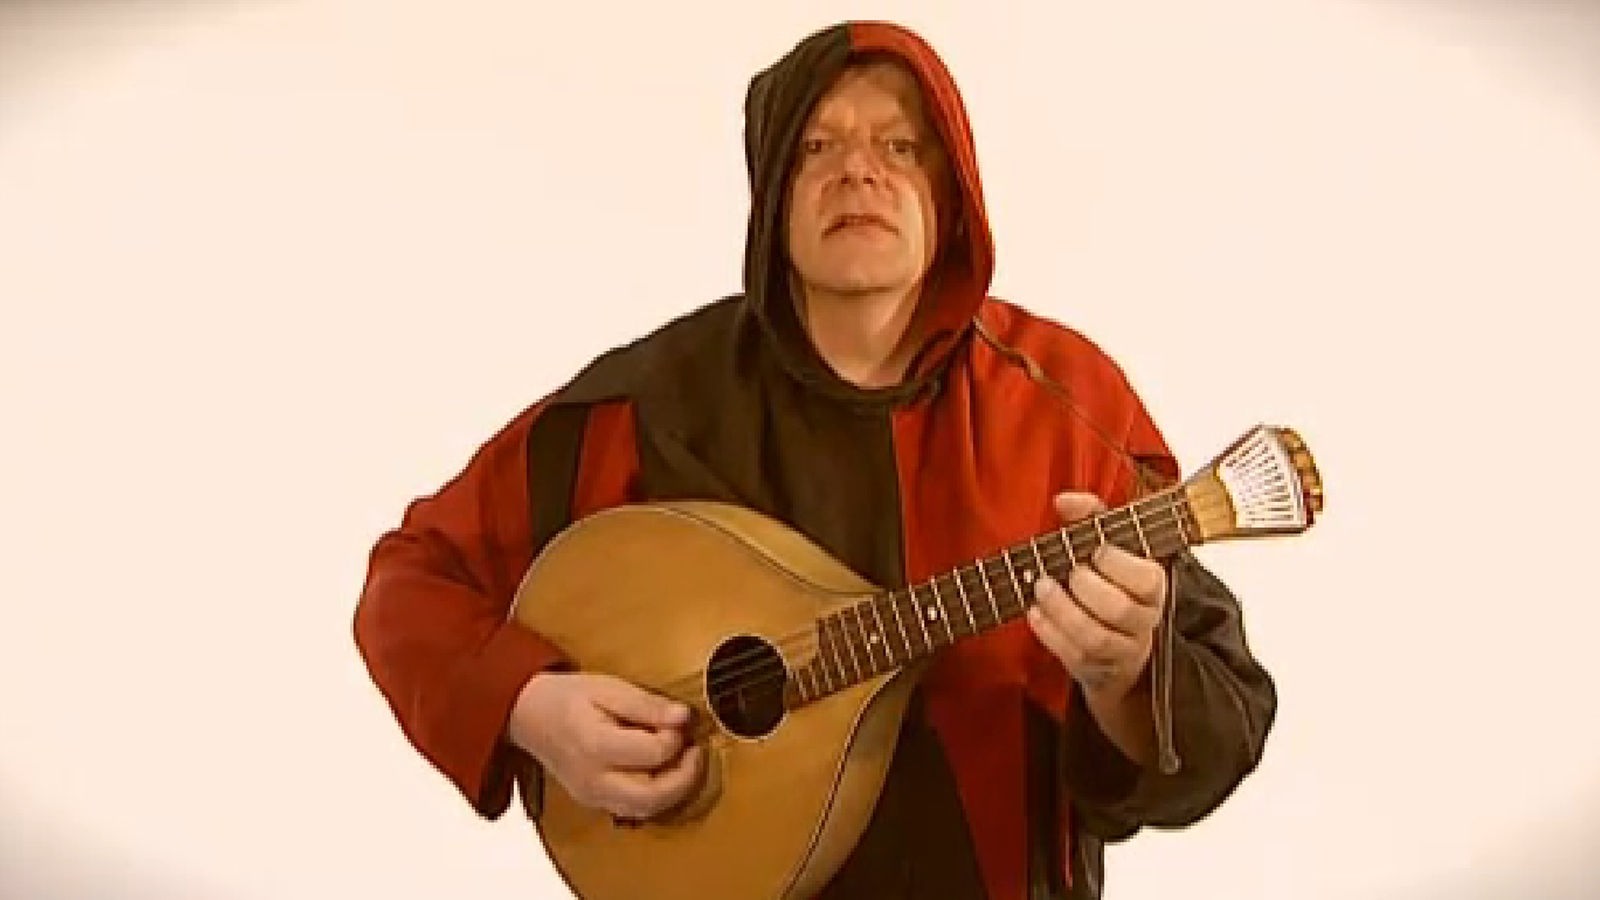 Ein Mann in mittelalterlicher Kleidung singt einen Minnesang.